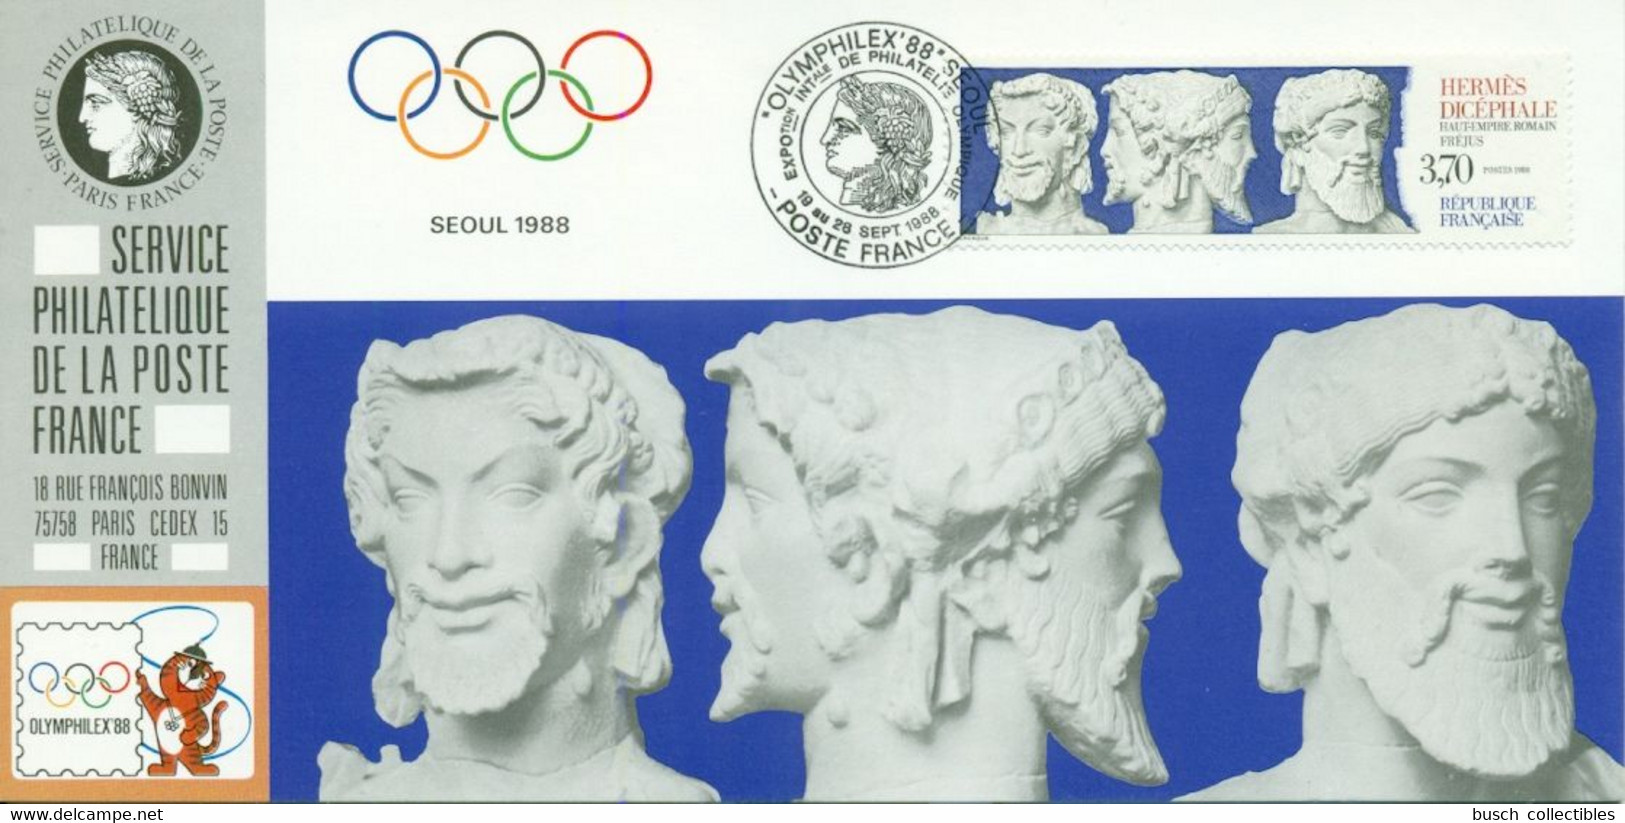 049 Carte Officielle Exposition Internationale Exhibition Seoul 1988 FDC France Olymphilex Jeux Olymiques Olympic Games - Exposiciones Filatélicas